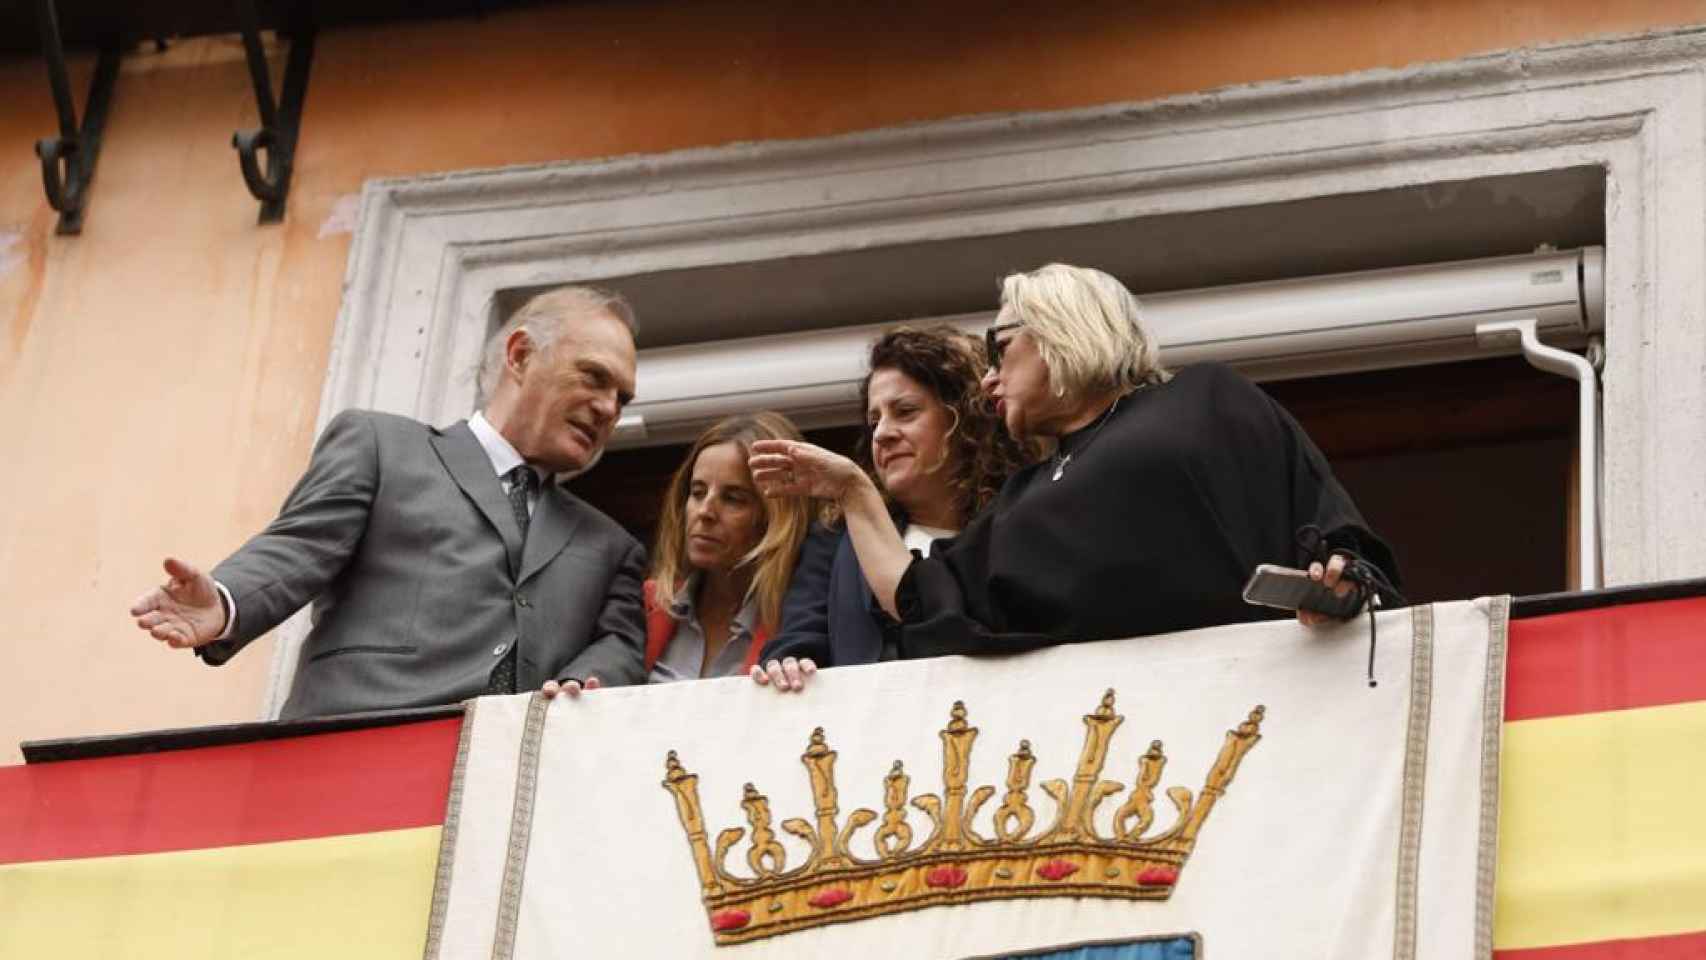 Pedro Piqueras, Eva Tribiño, Maritcha Ruiz y Esther Esteban en el balcón. Foto: Javier Longobardo.